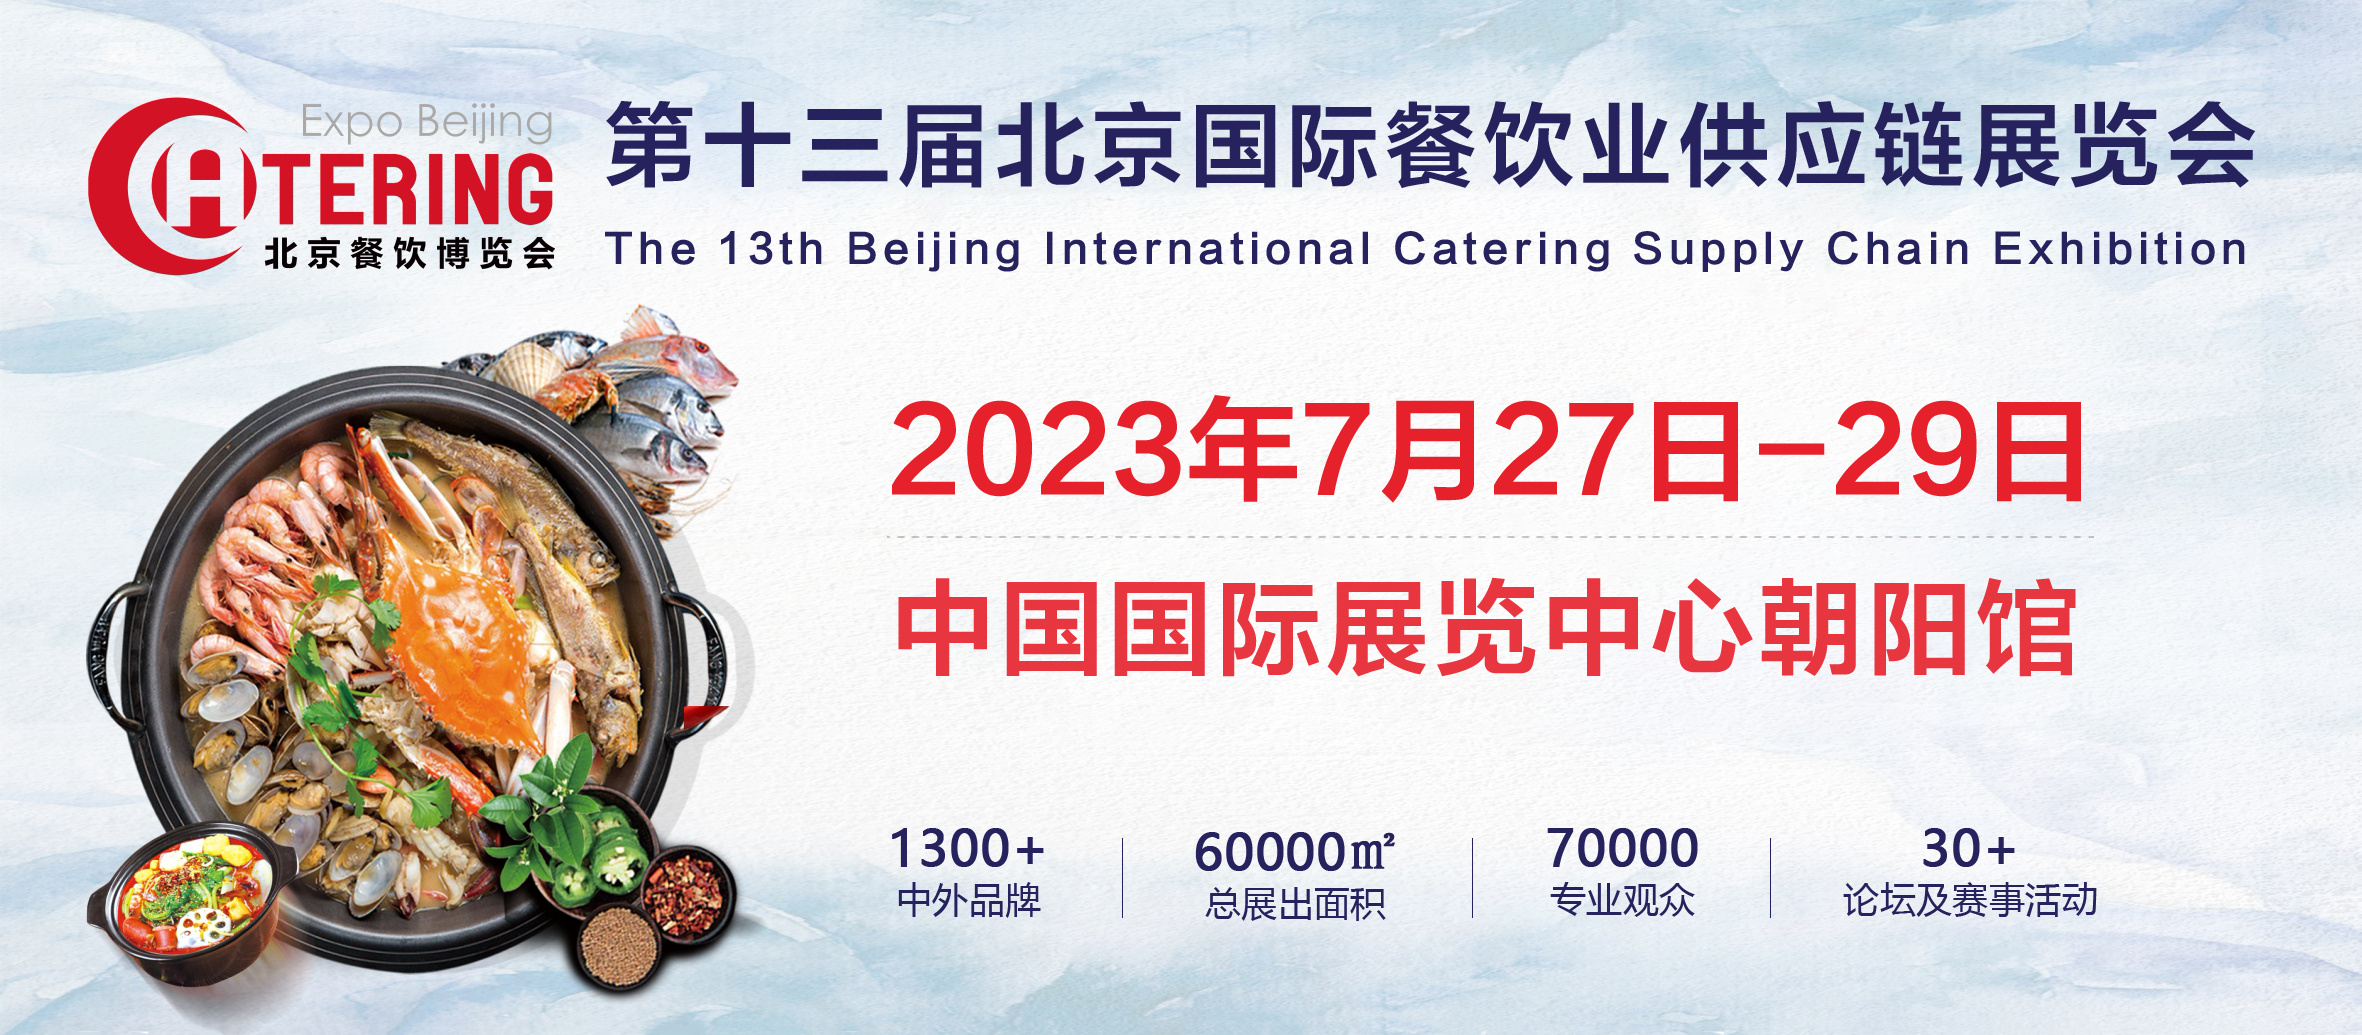 展商推介 | 盖世食品将携最新产品亮相2023北京餐博会